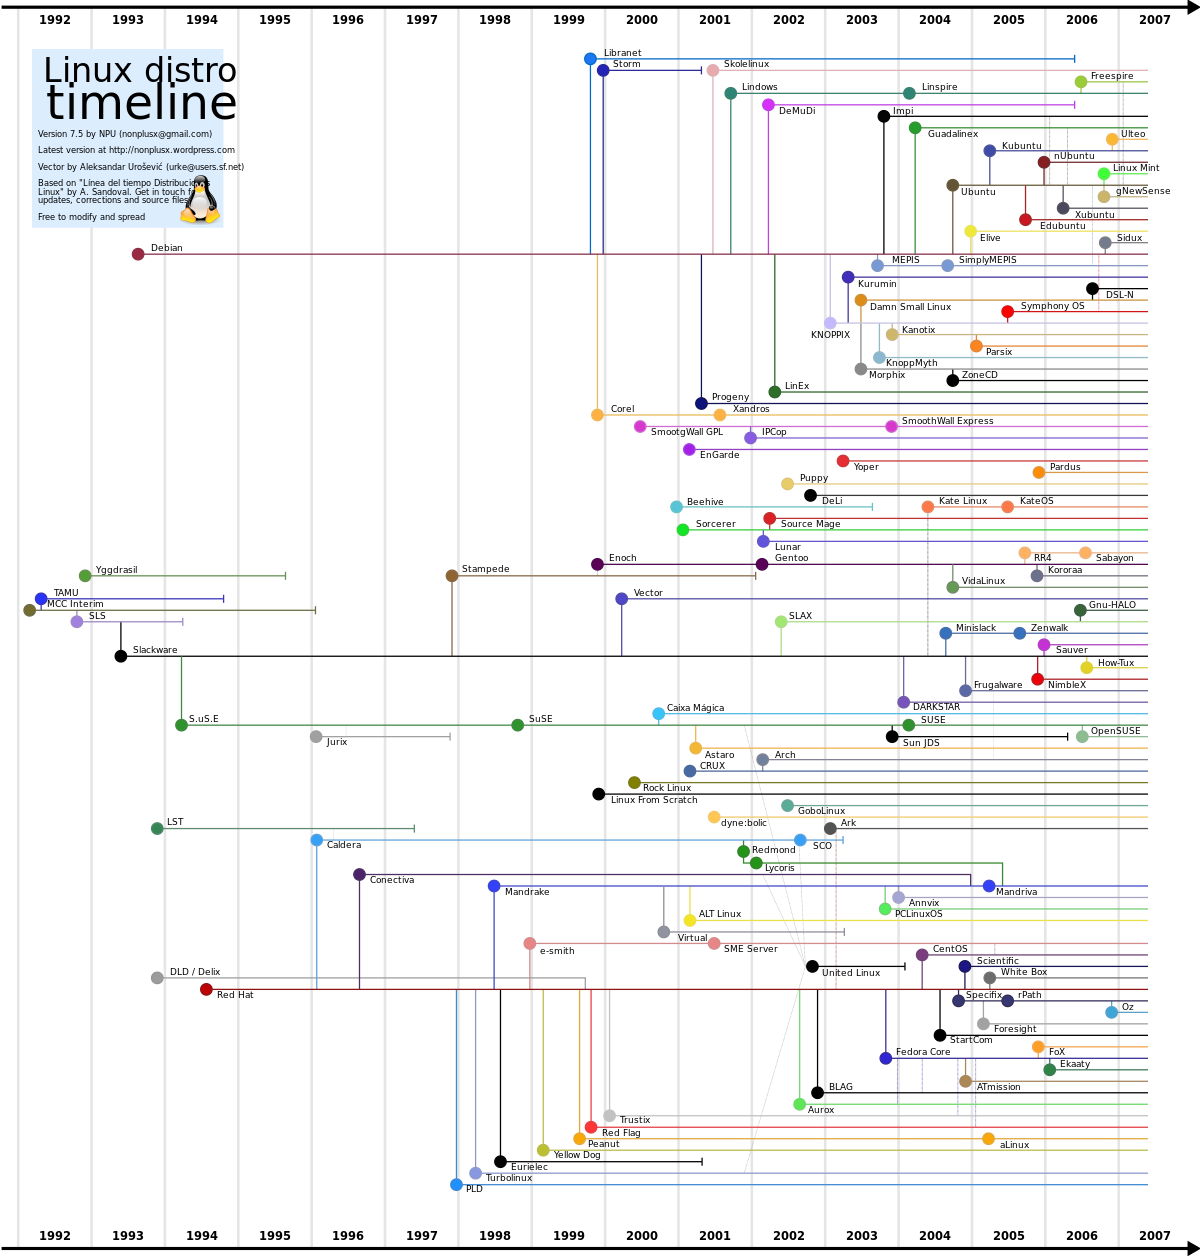 Ligne temporelle des distributions Linux